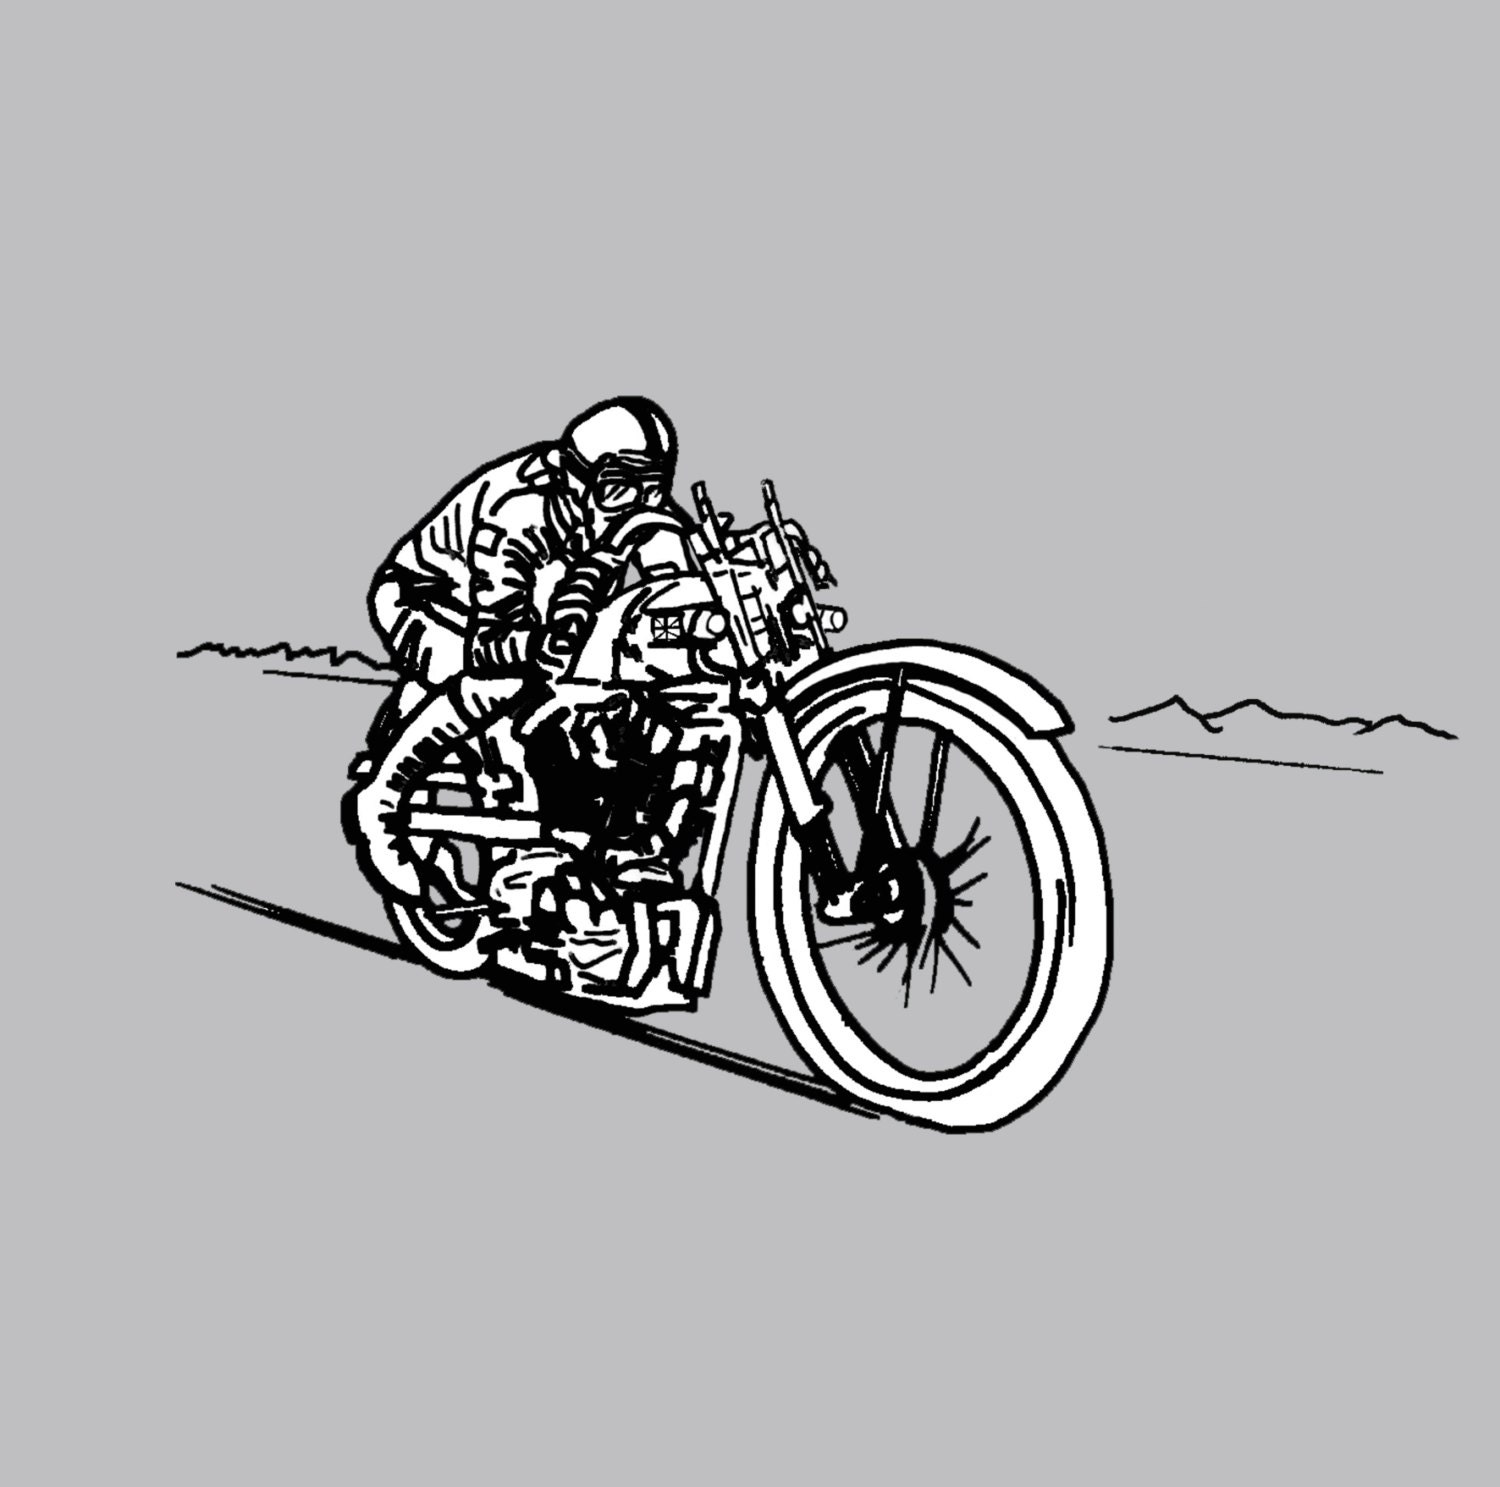 STEELHORSE 'salt Racer' Men's Motorcycle T-shirt - Etsy